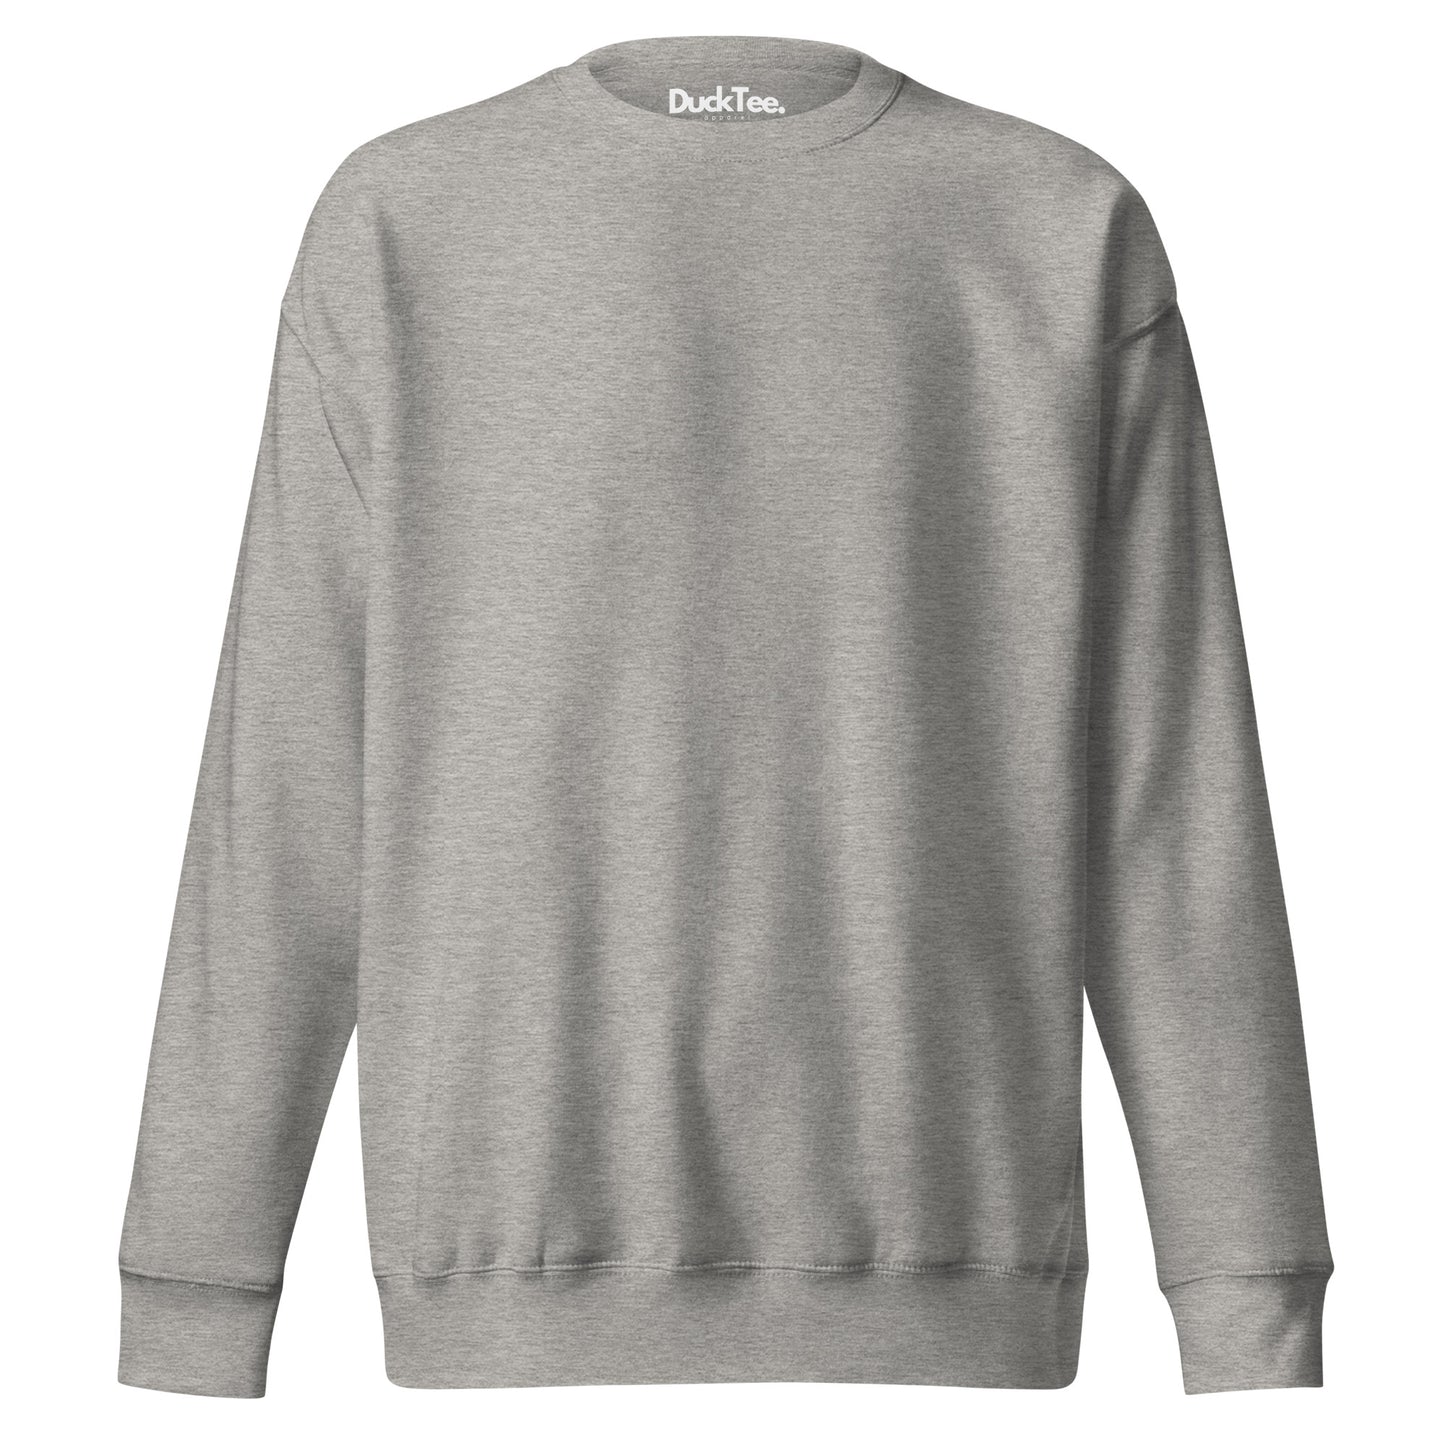 Classic DuckTee | Unisex Premium Sweatshirt